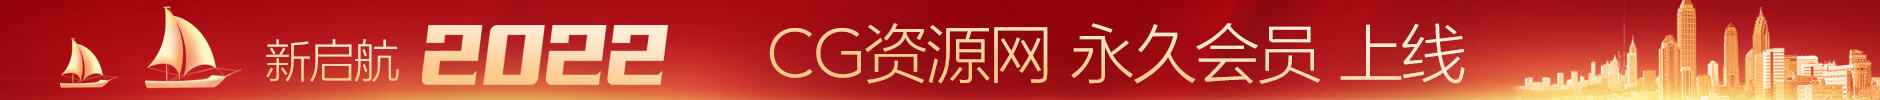 华润娱乐-彩8国际娱乐平台网站用户充值